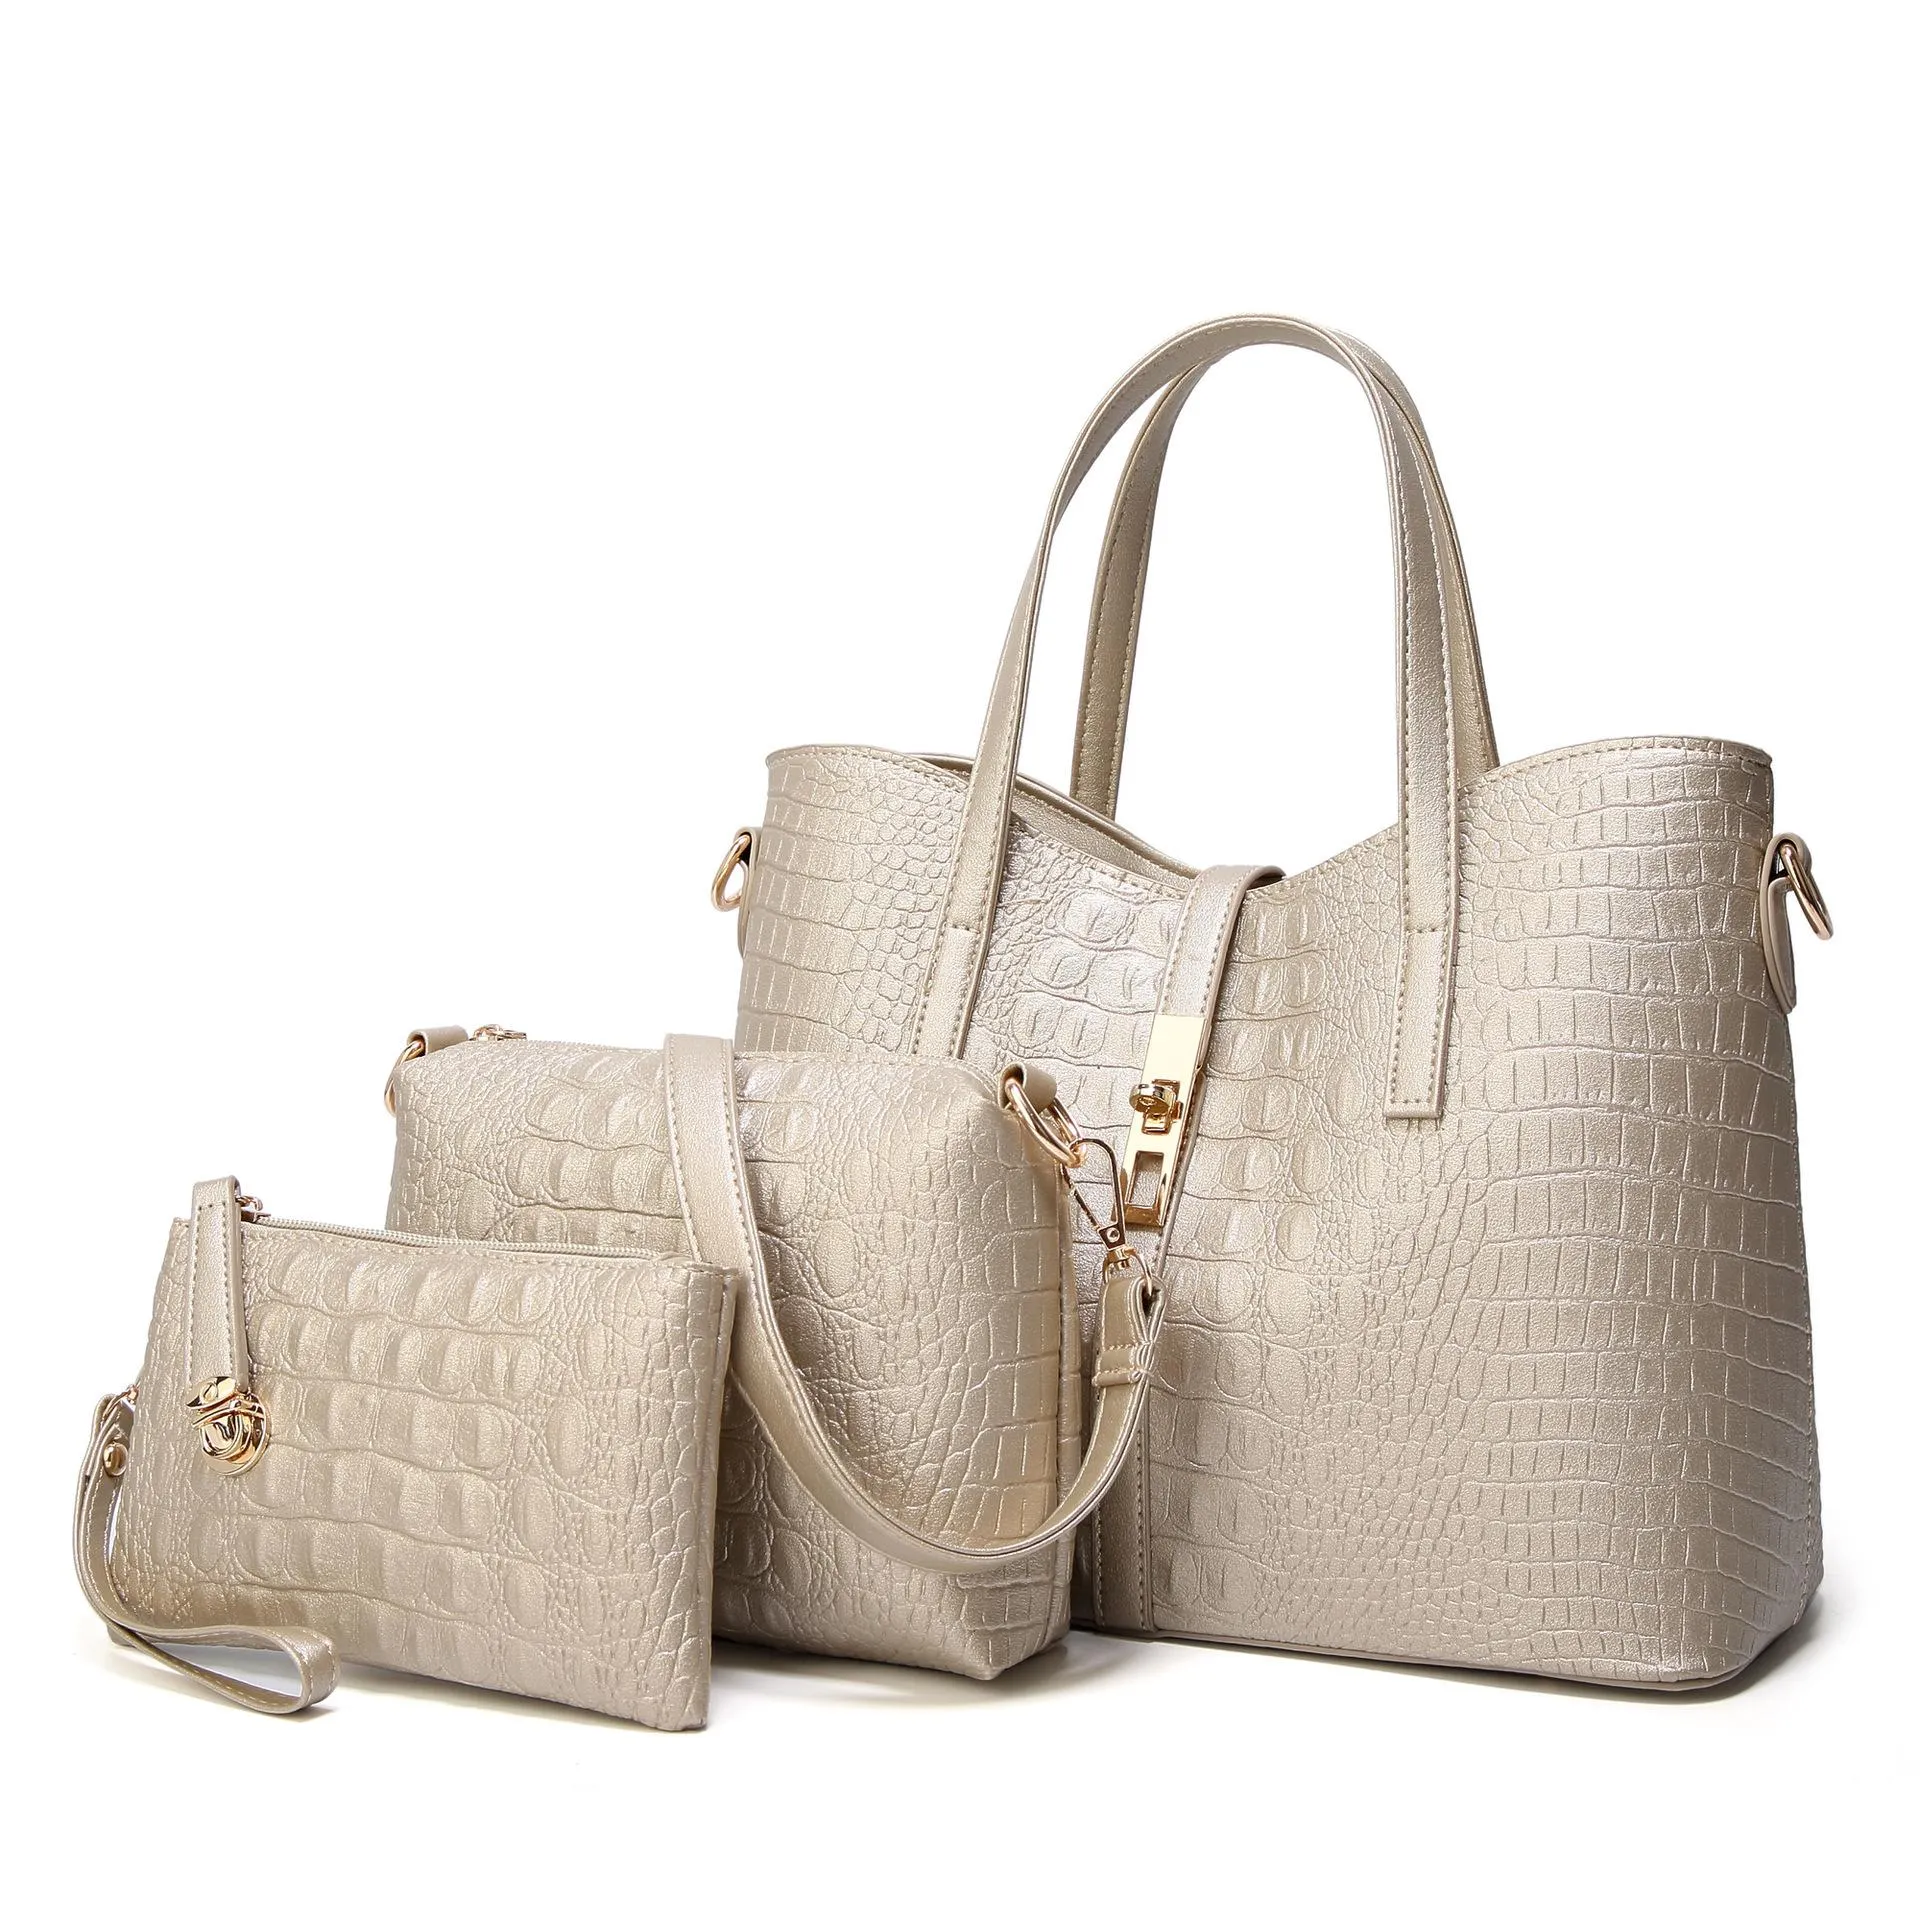 Оптовая продажа 2020 новая женская сумка европейская и американская мода Trend на плечо сумка аллигатор шаблон сумочка из трех частей композитная сумка